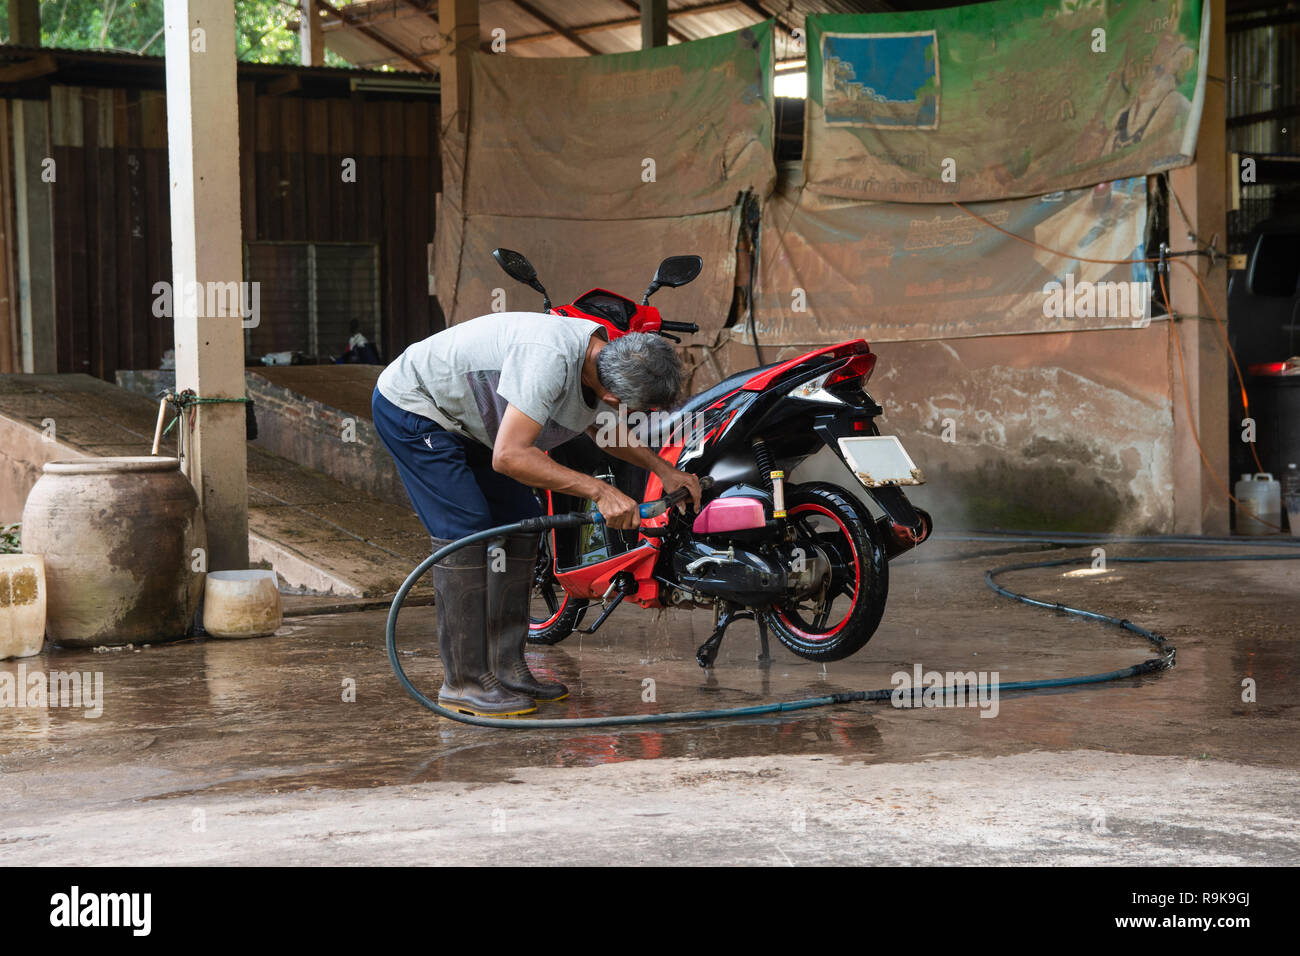 Alter Mann ihr Motorrad mit Hochdruckreiniger waschen bei Auto waschen Shop  Stockfotografie - Alamy